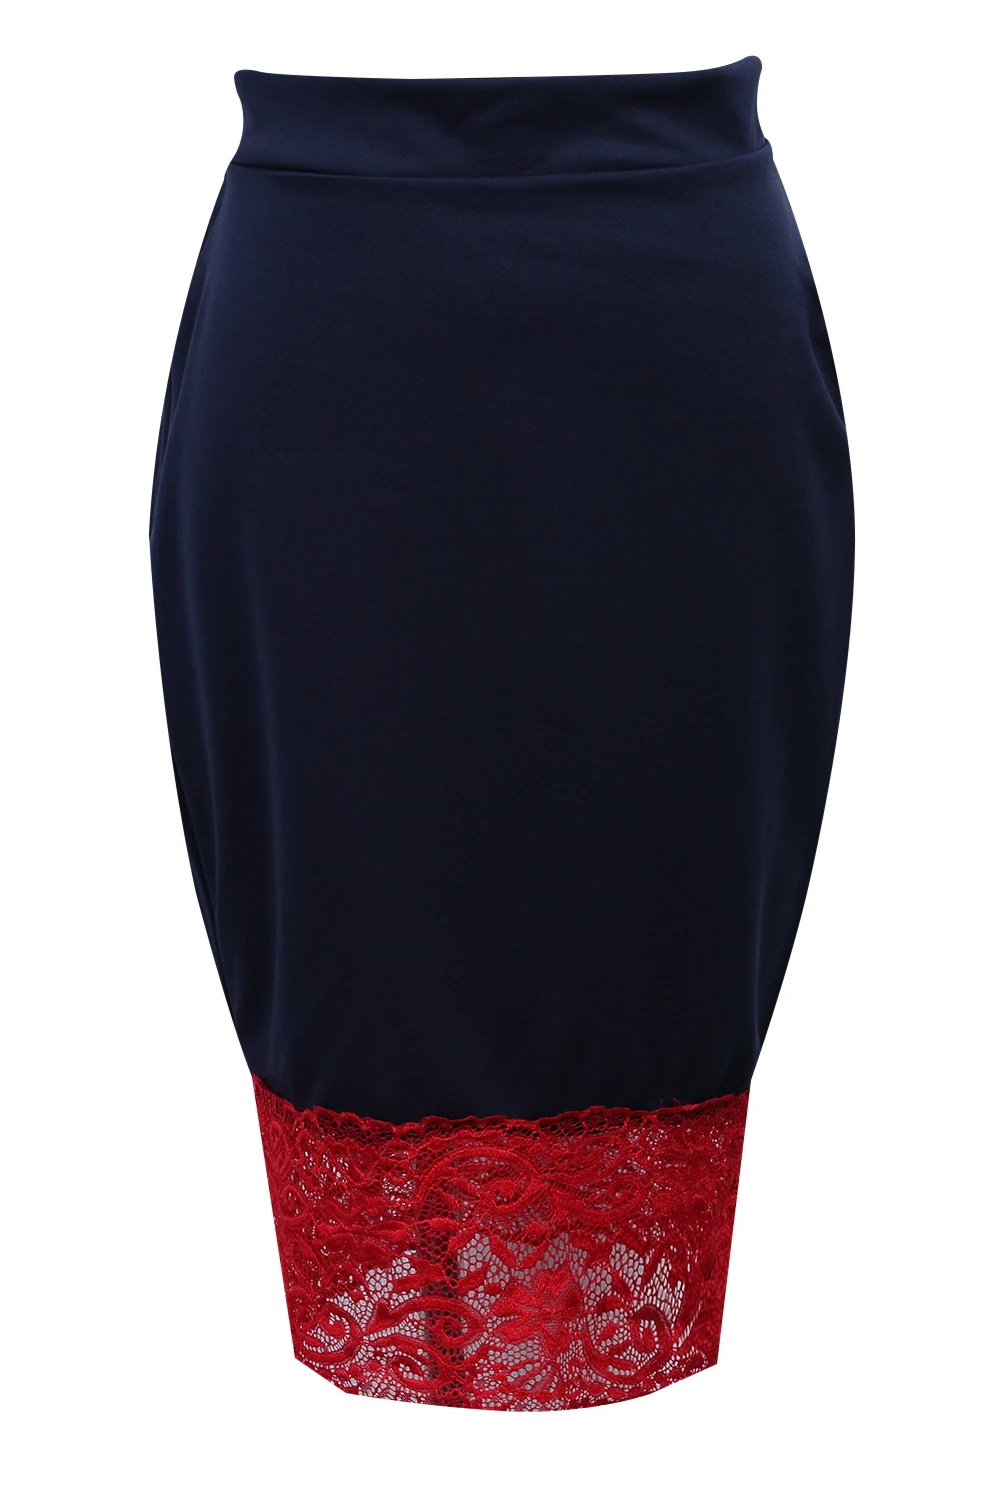 Женские OL замшевые однотонные женские юбки-карандаш с высокой талией Базовая облегающая юбка миди черная сексуальная эластичная официальная офисная юбка - Цвет: Синий